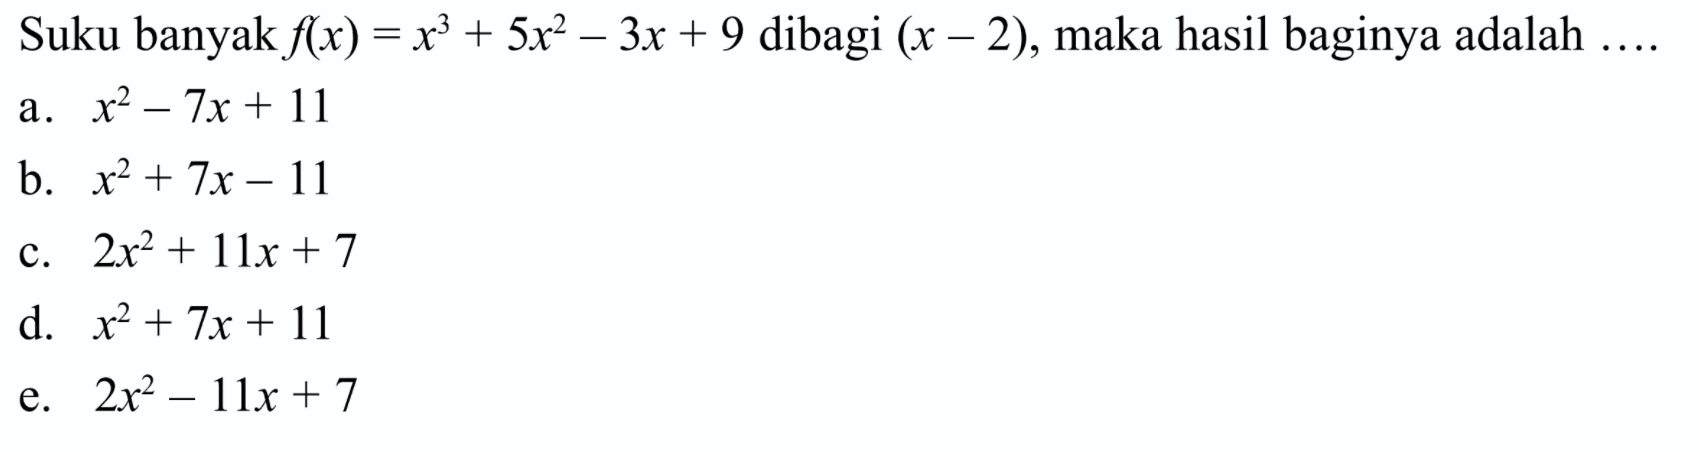 Suku banyak f(x)=x^3+5x^2-3x+9 dibagi (x-2), maka hasil baginya adalah....